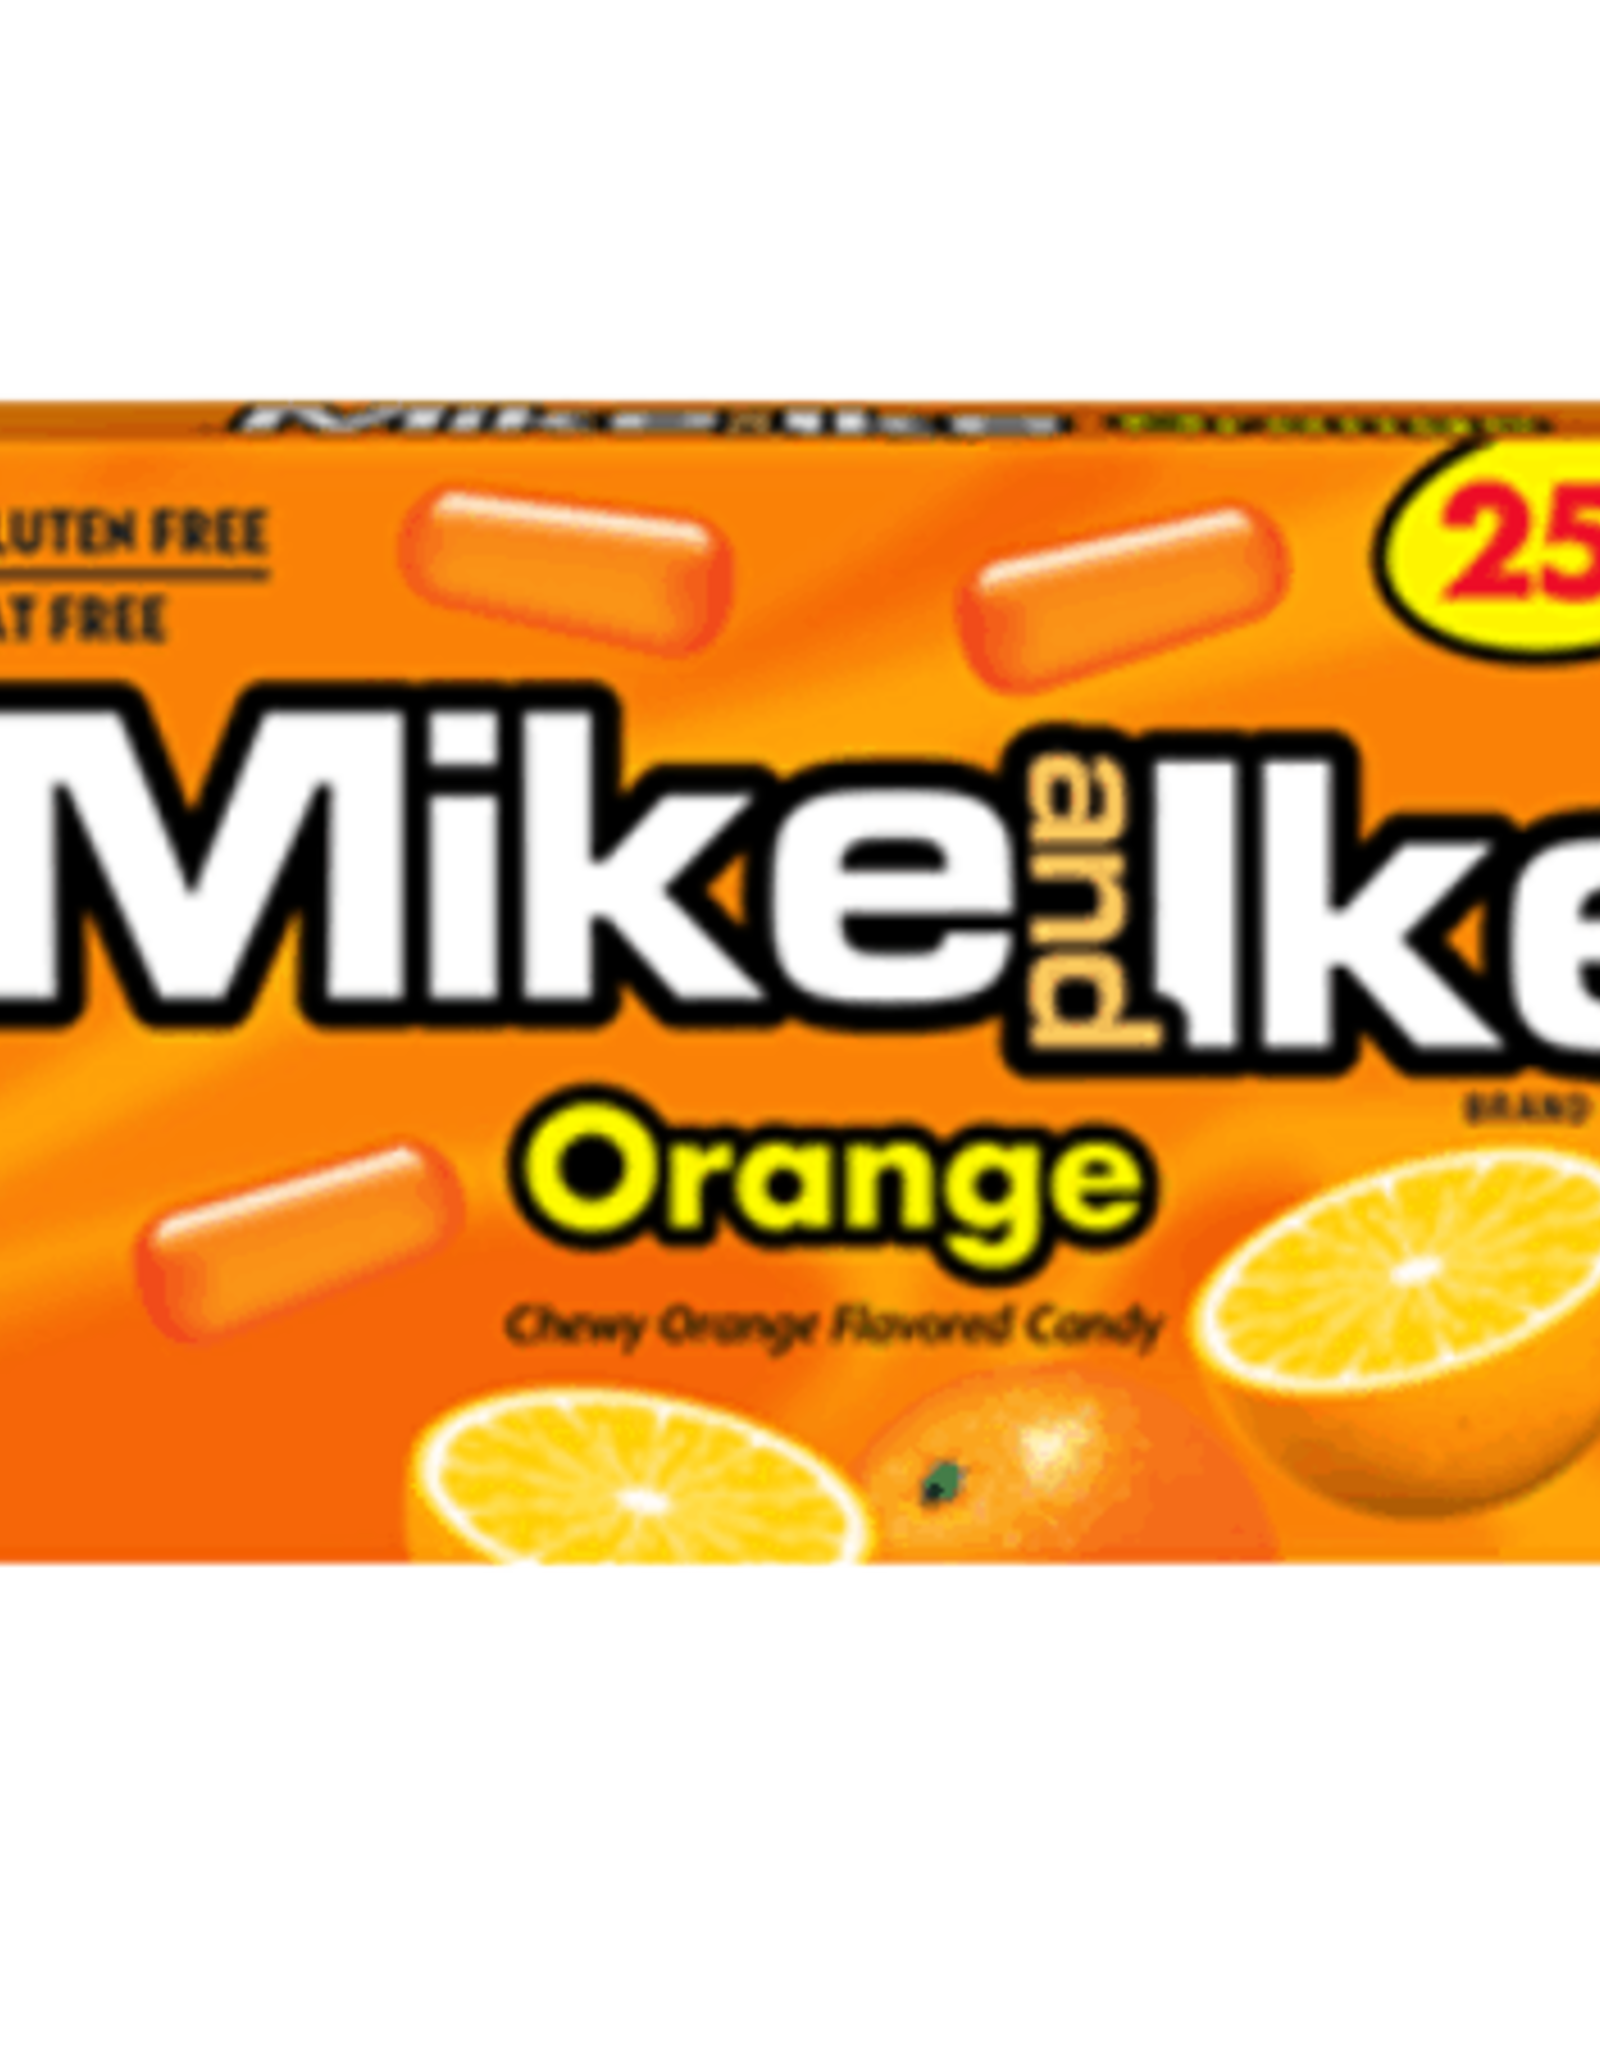 Mike & Ike Orange 0.78oz